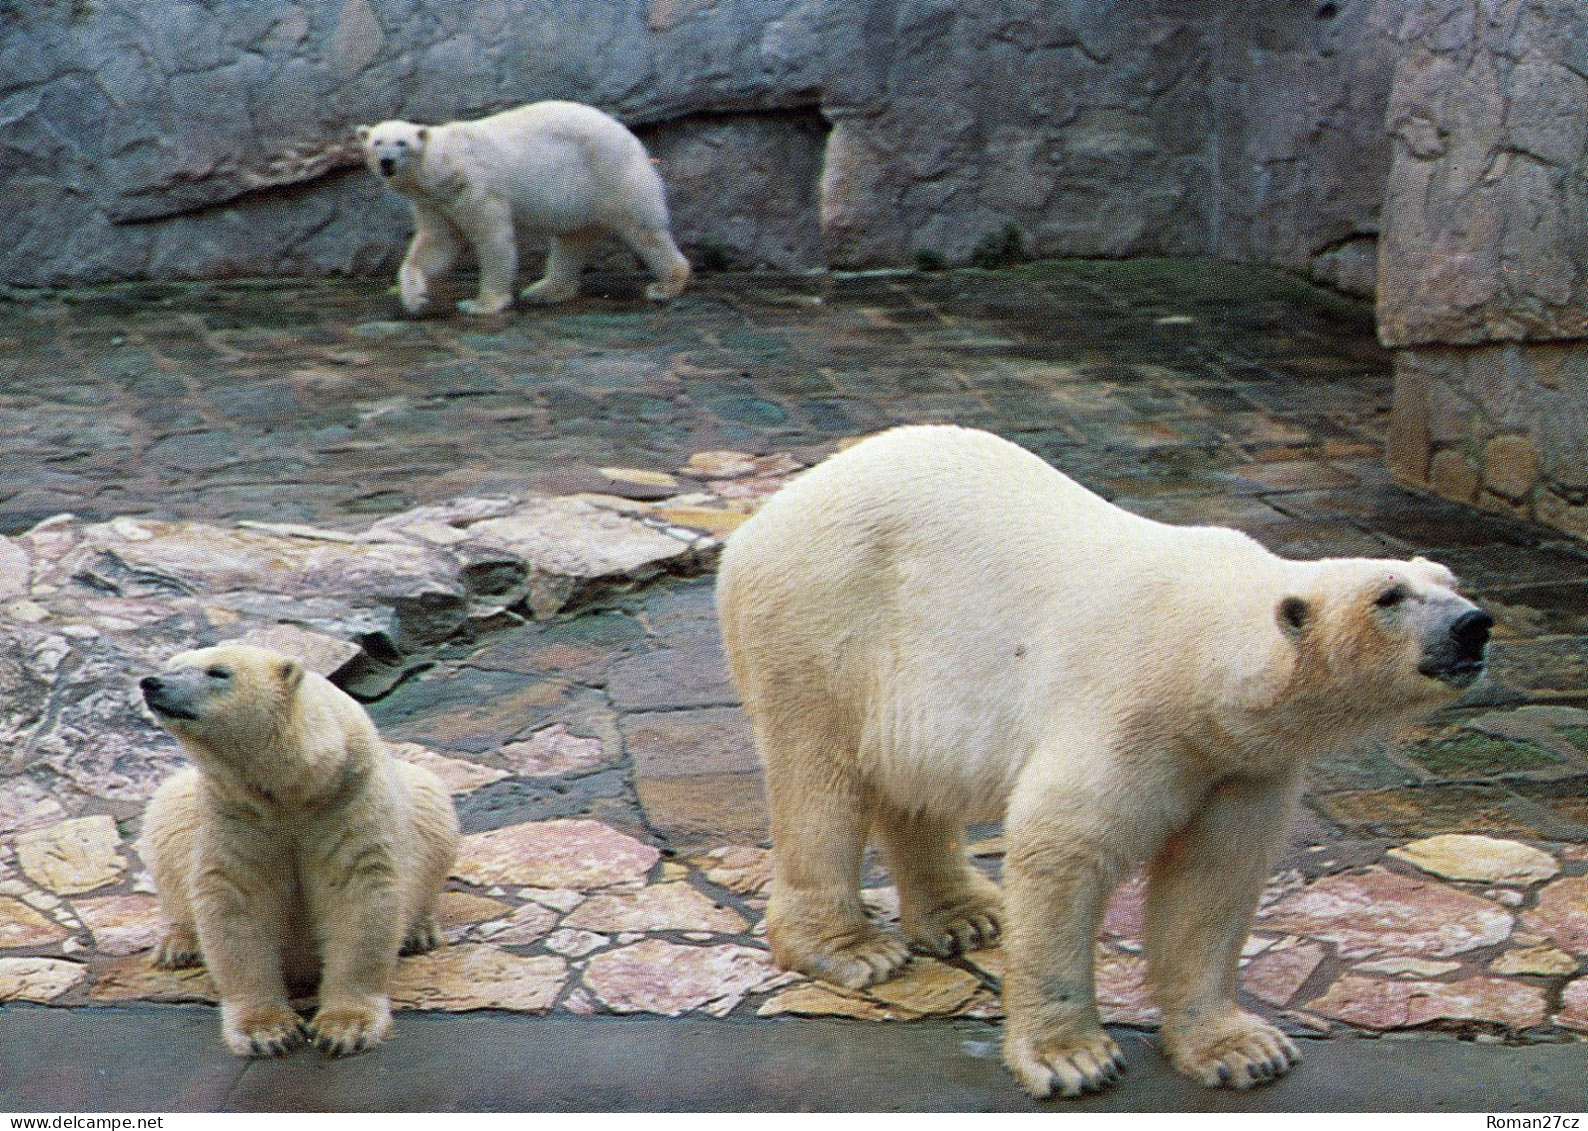 ZOO Wroclaw, Poland - Polar Bear - Polonia